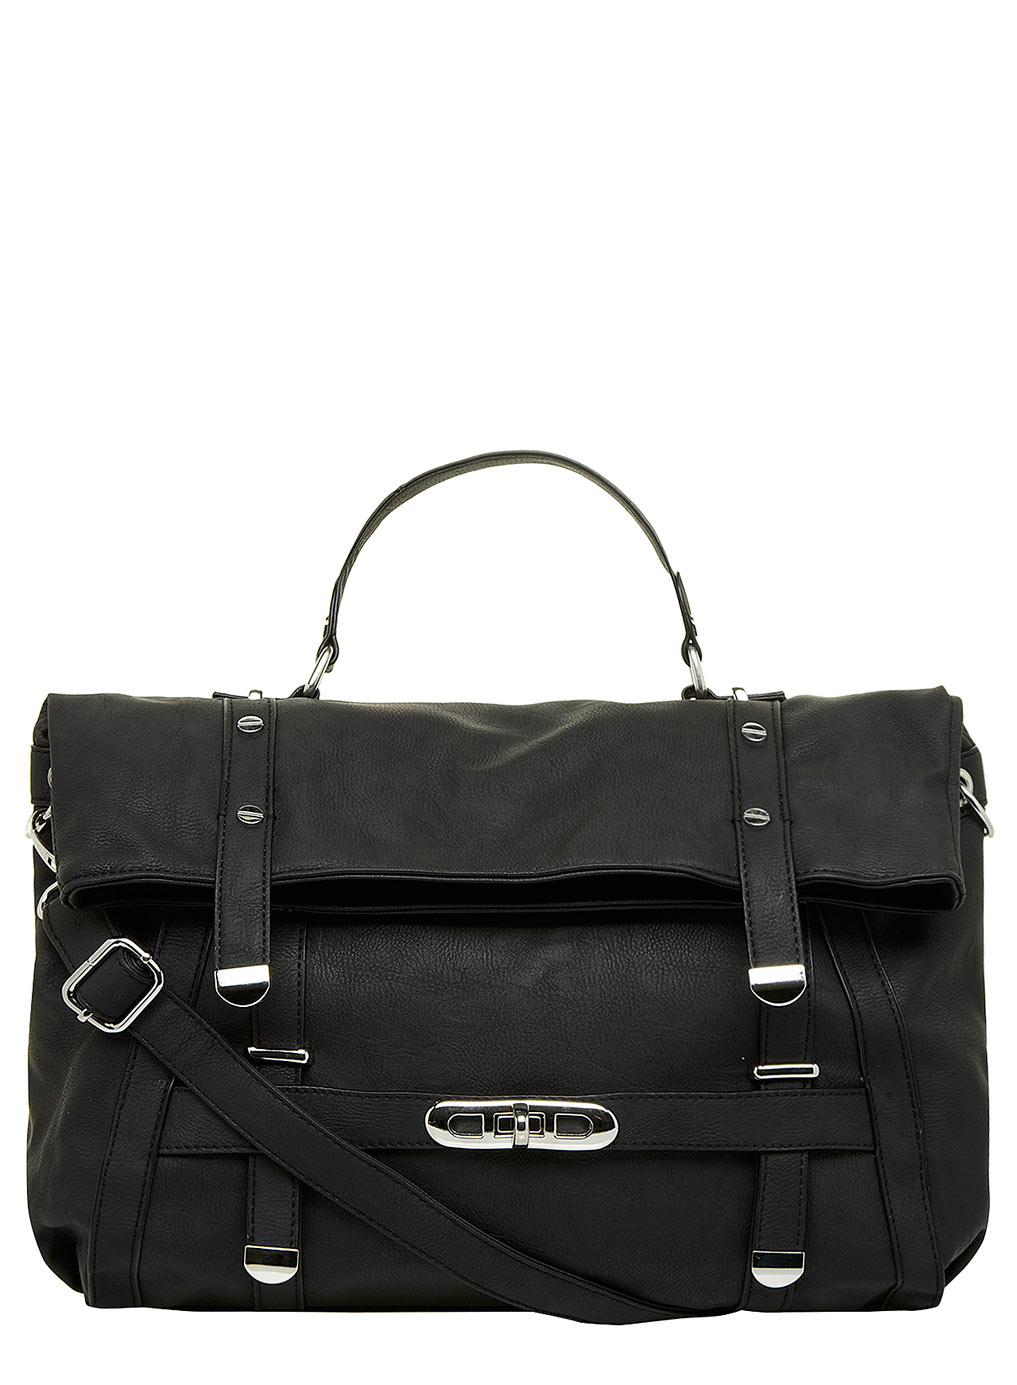 Dorothy Perkins Black large foldover satchel 18340410